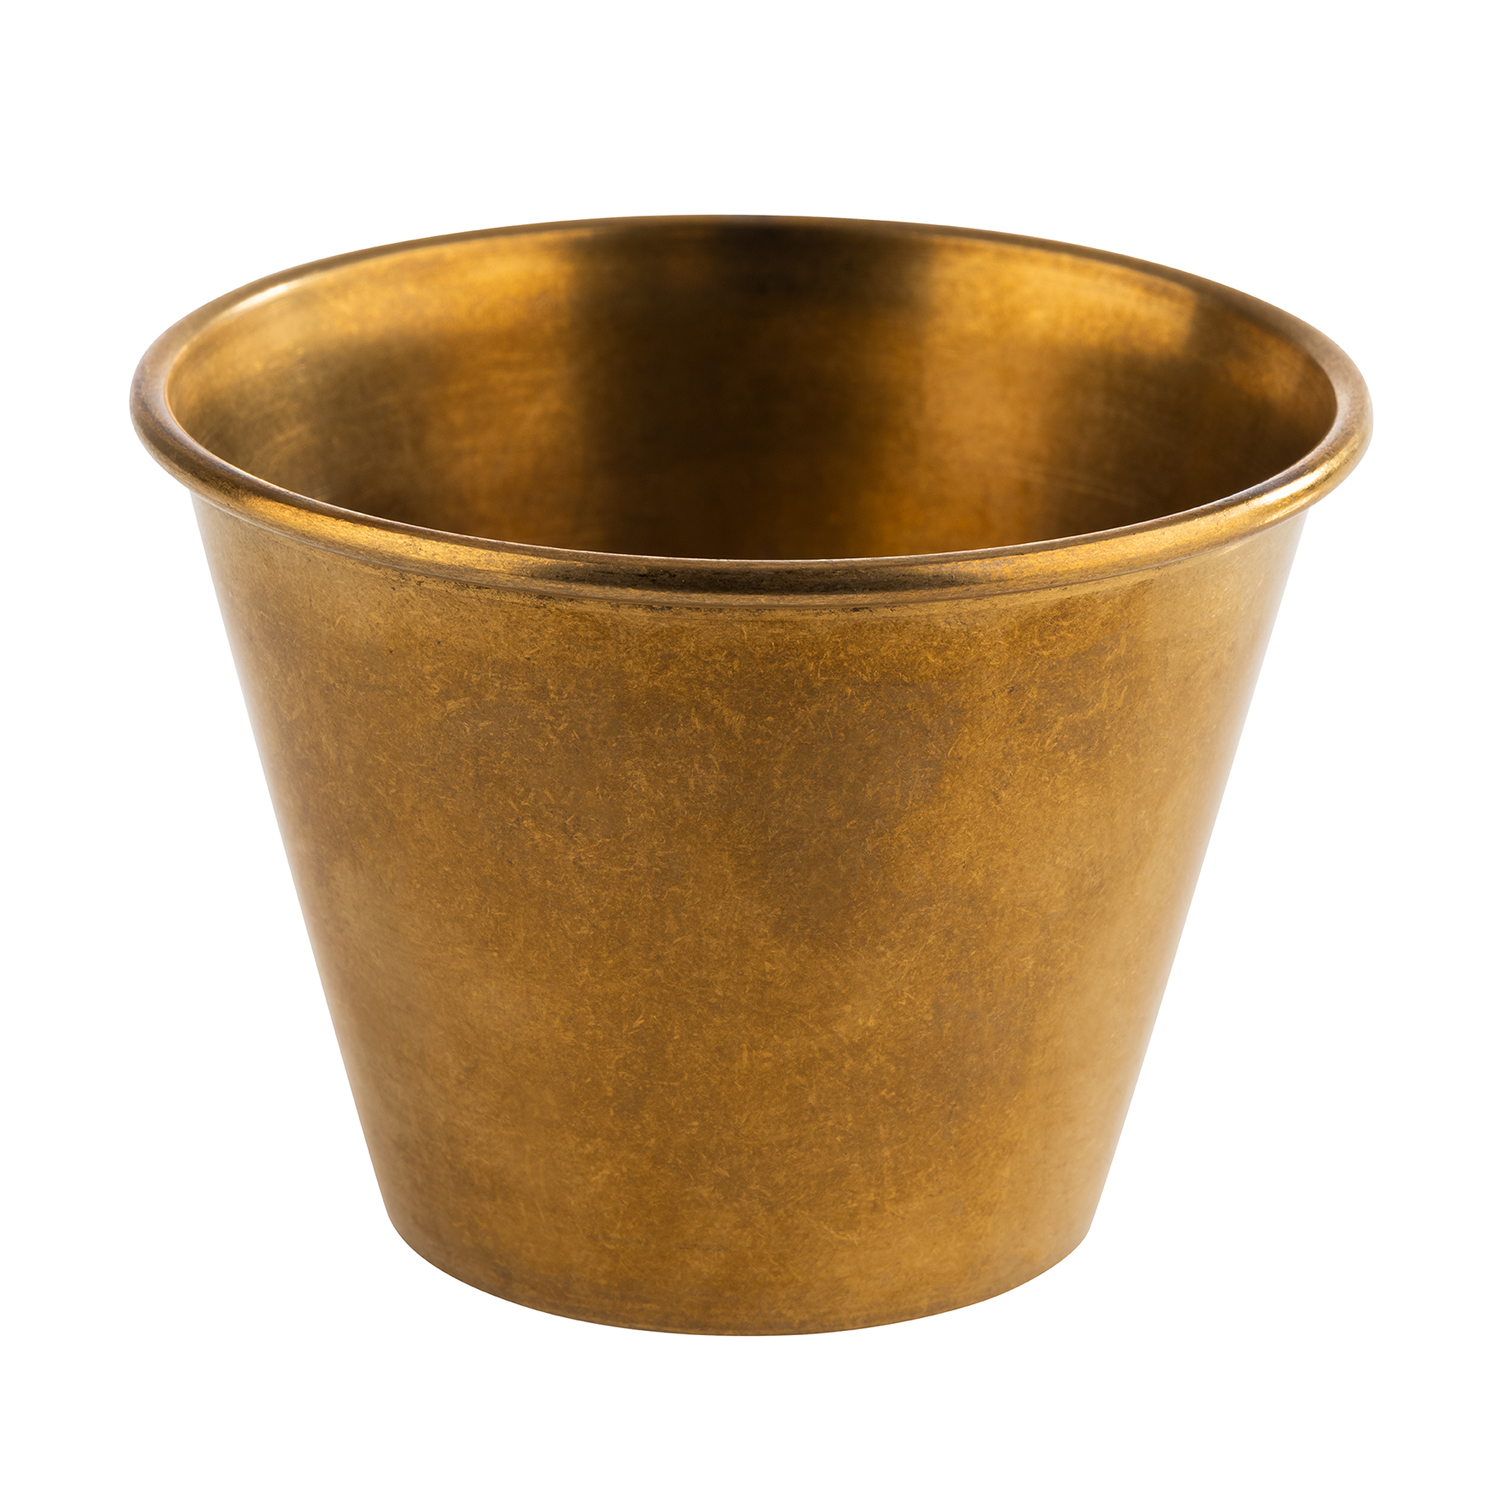 Dipschälchen gold, 6er Set Ø 6 cm, H: 4,5 cm, 60 ml     